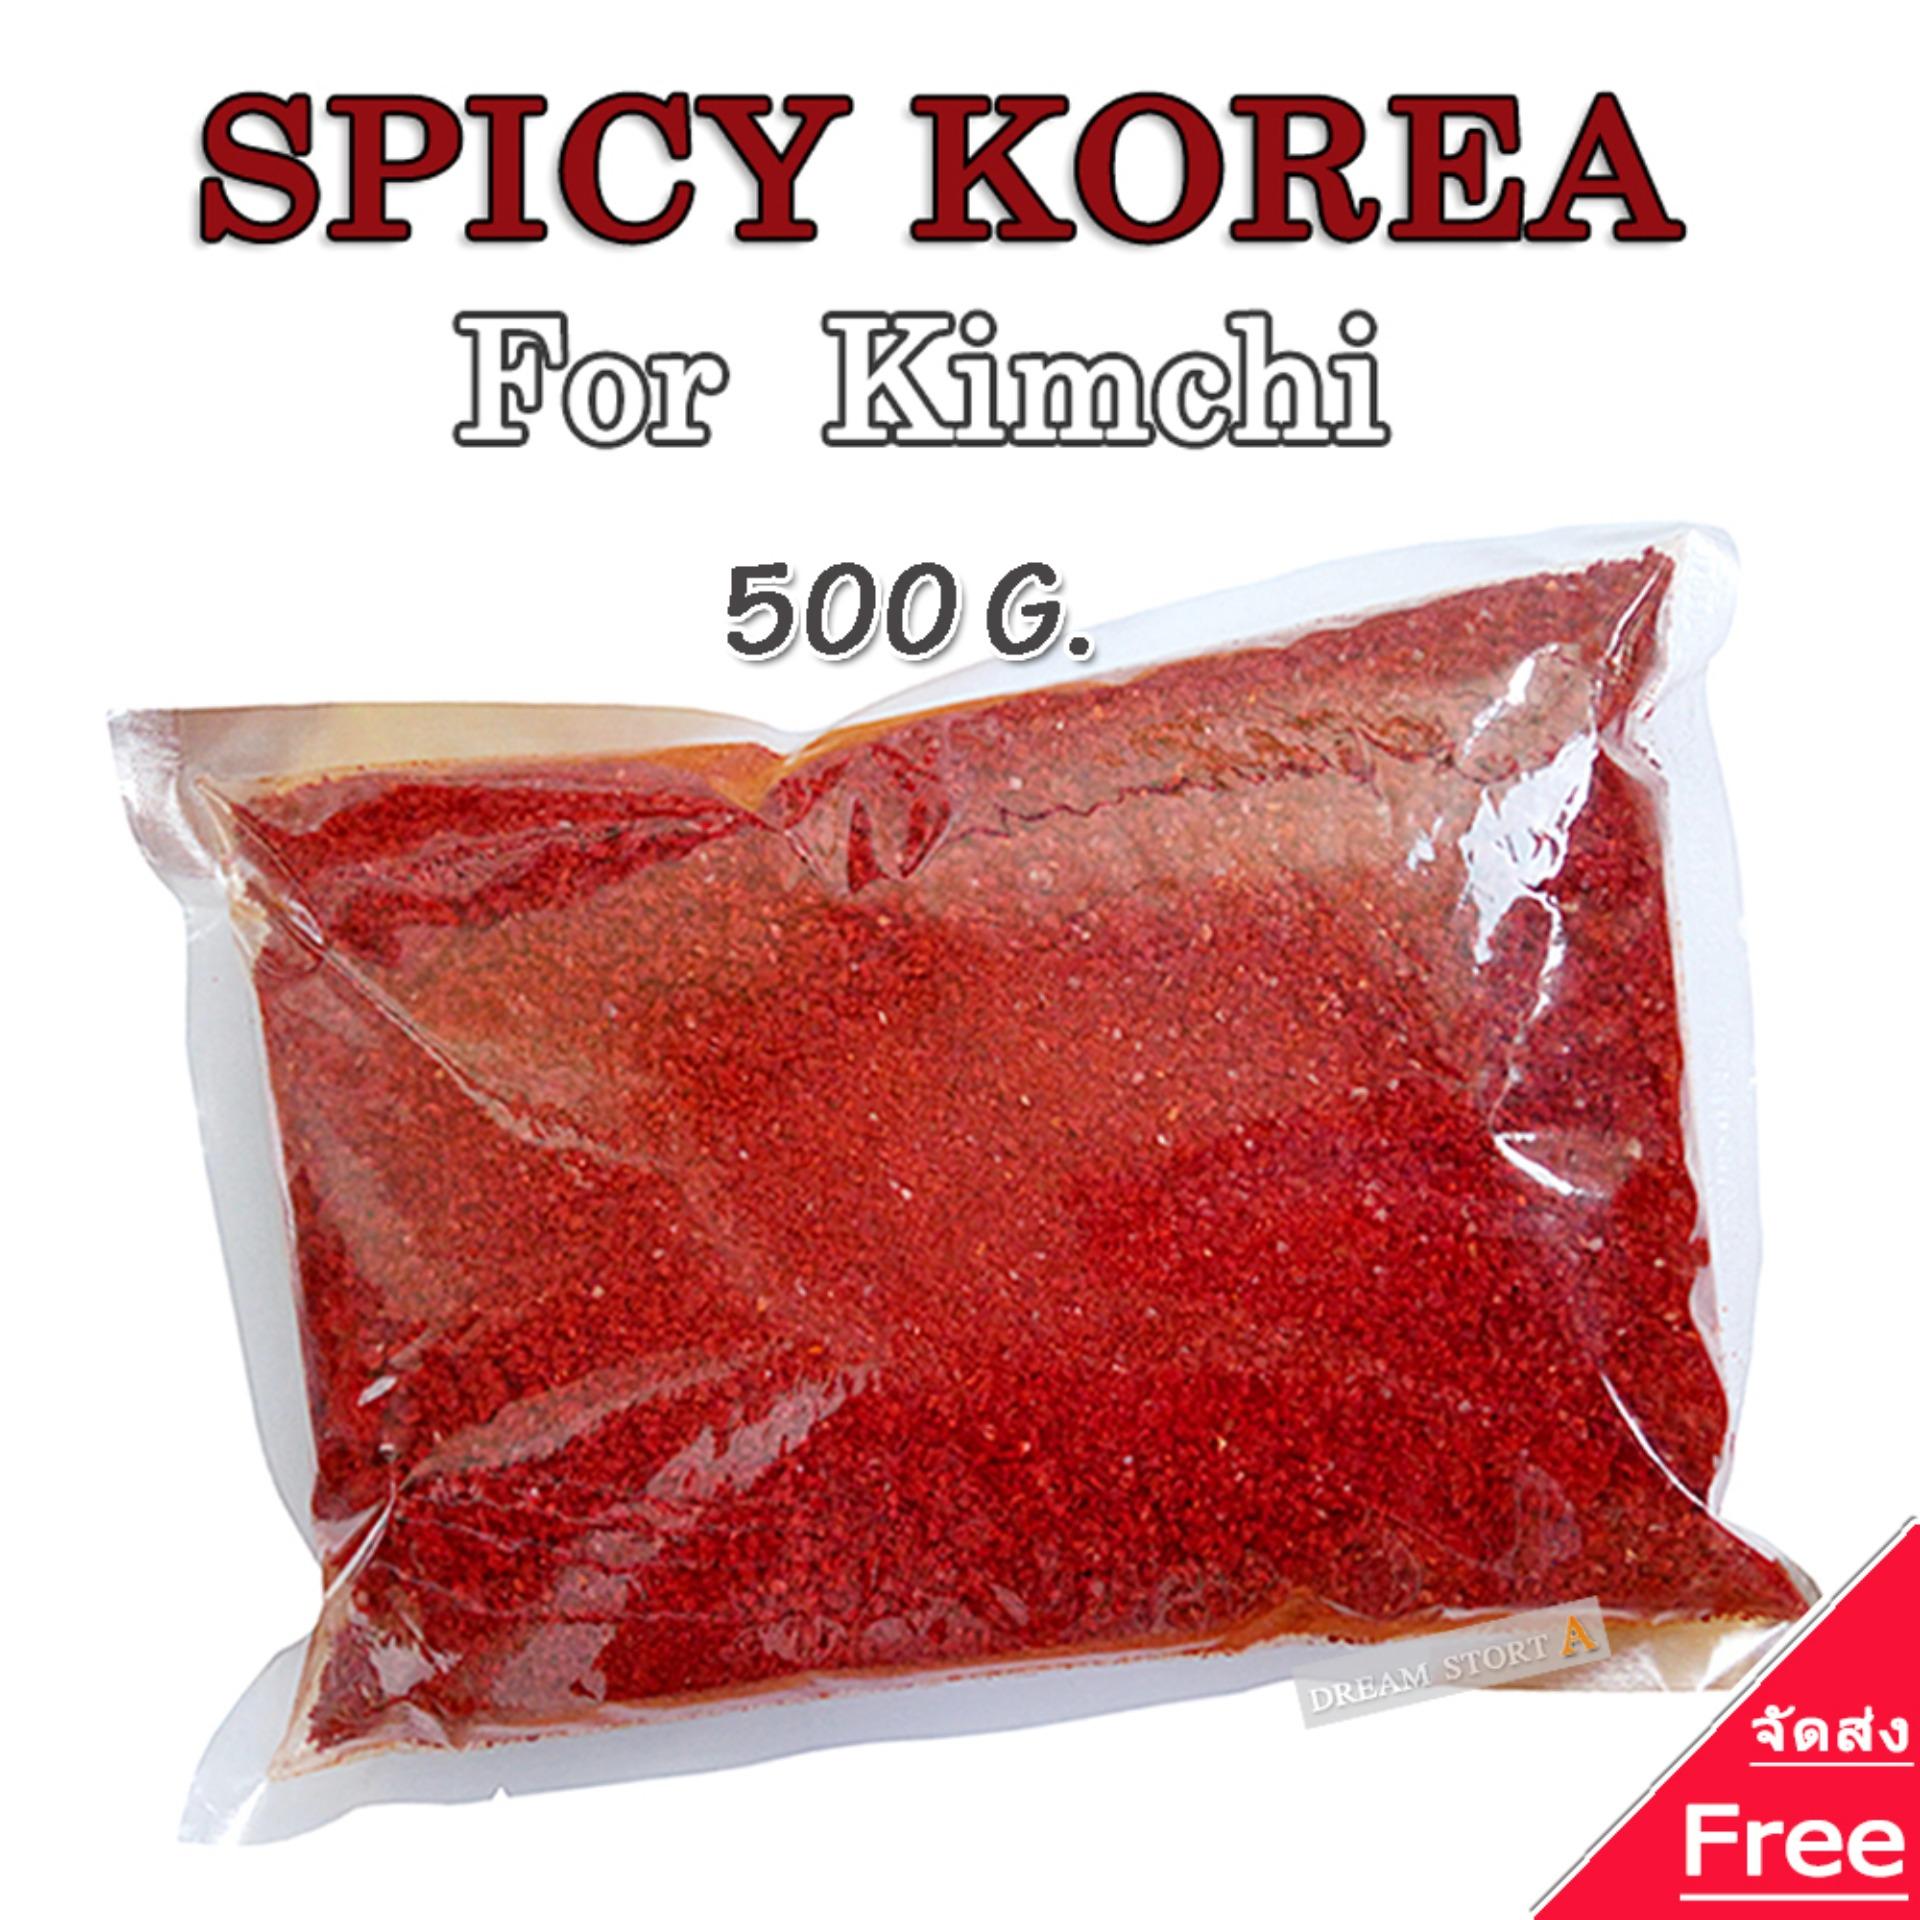 Spicy Korea พริกป่นเกาหลี สำหรับทำกิมจิและอาหาร ชนิดบดหยาบ 500 กรัม พริก เกาหลี